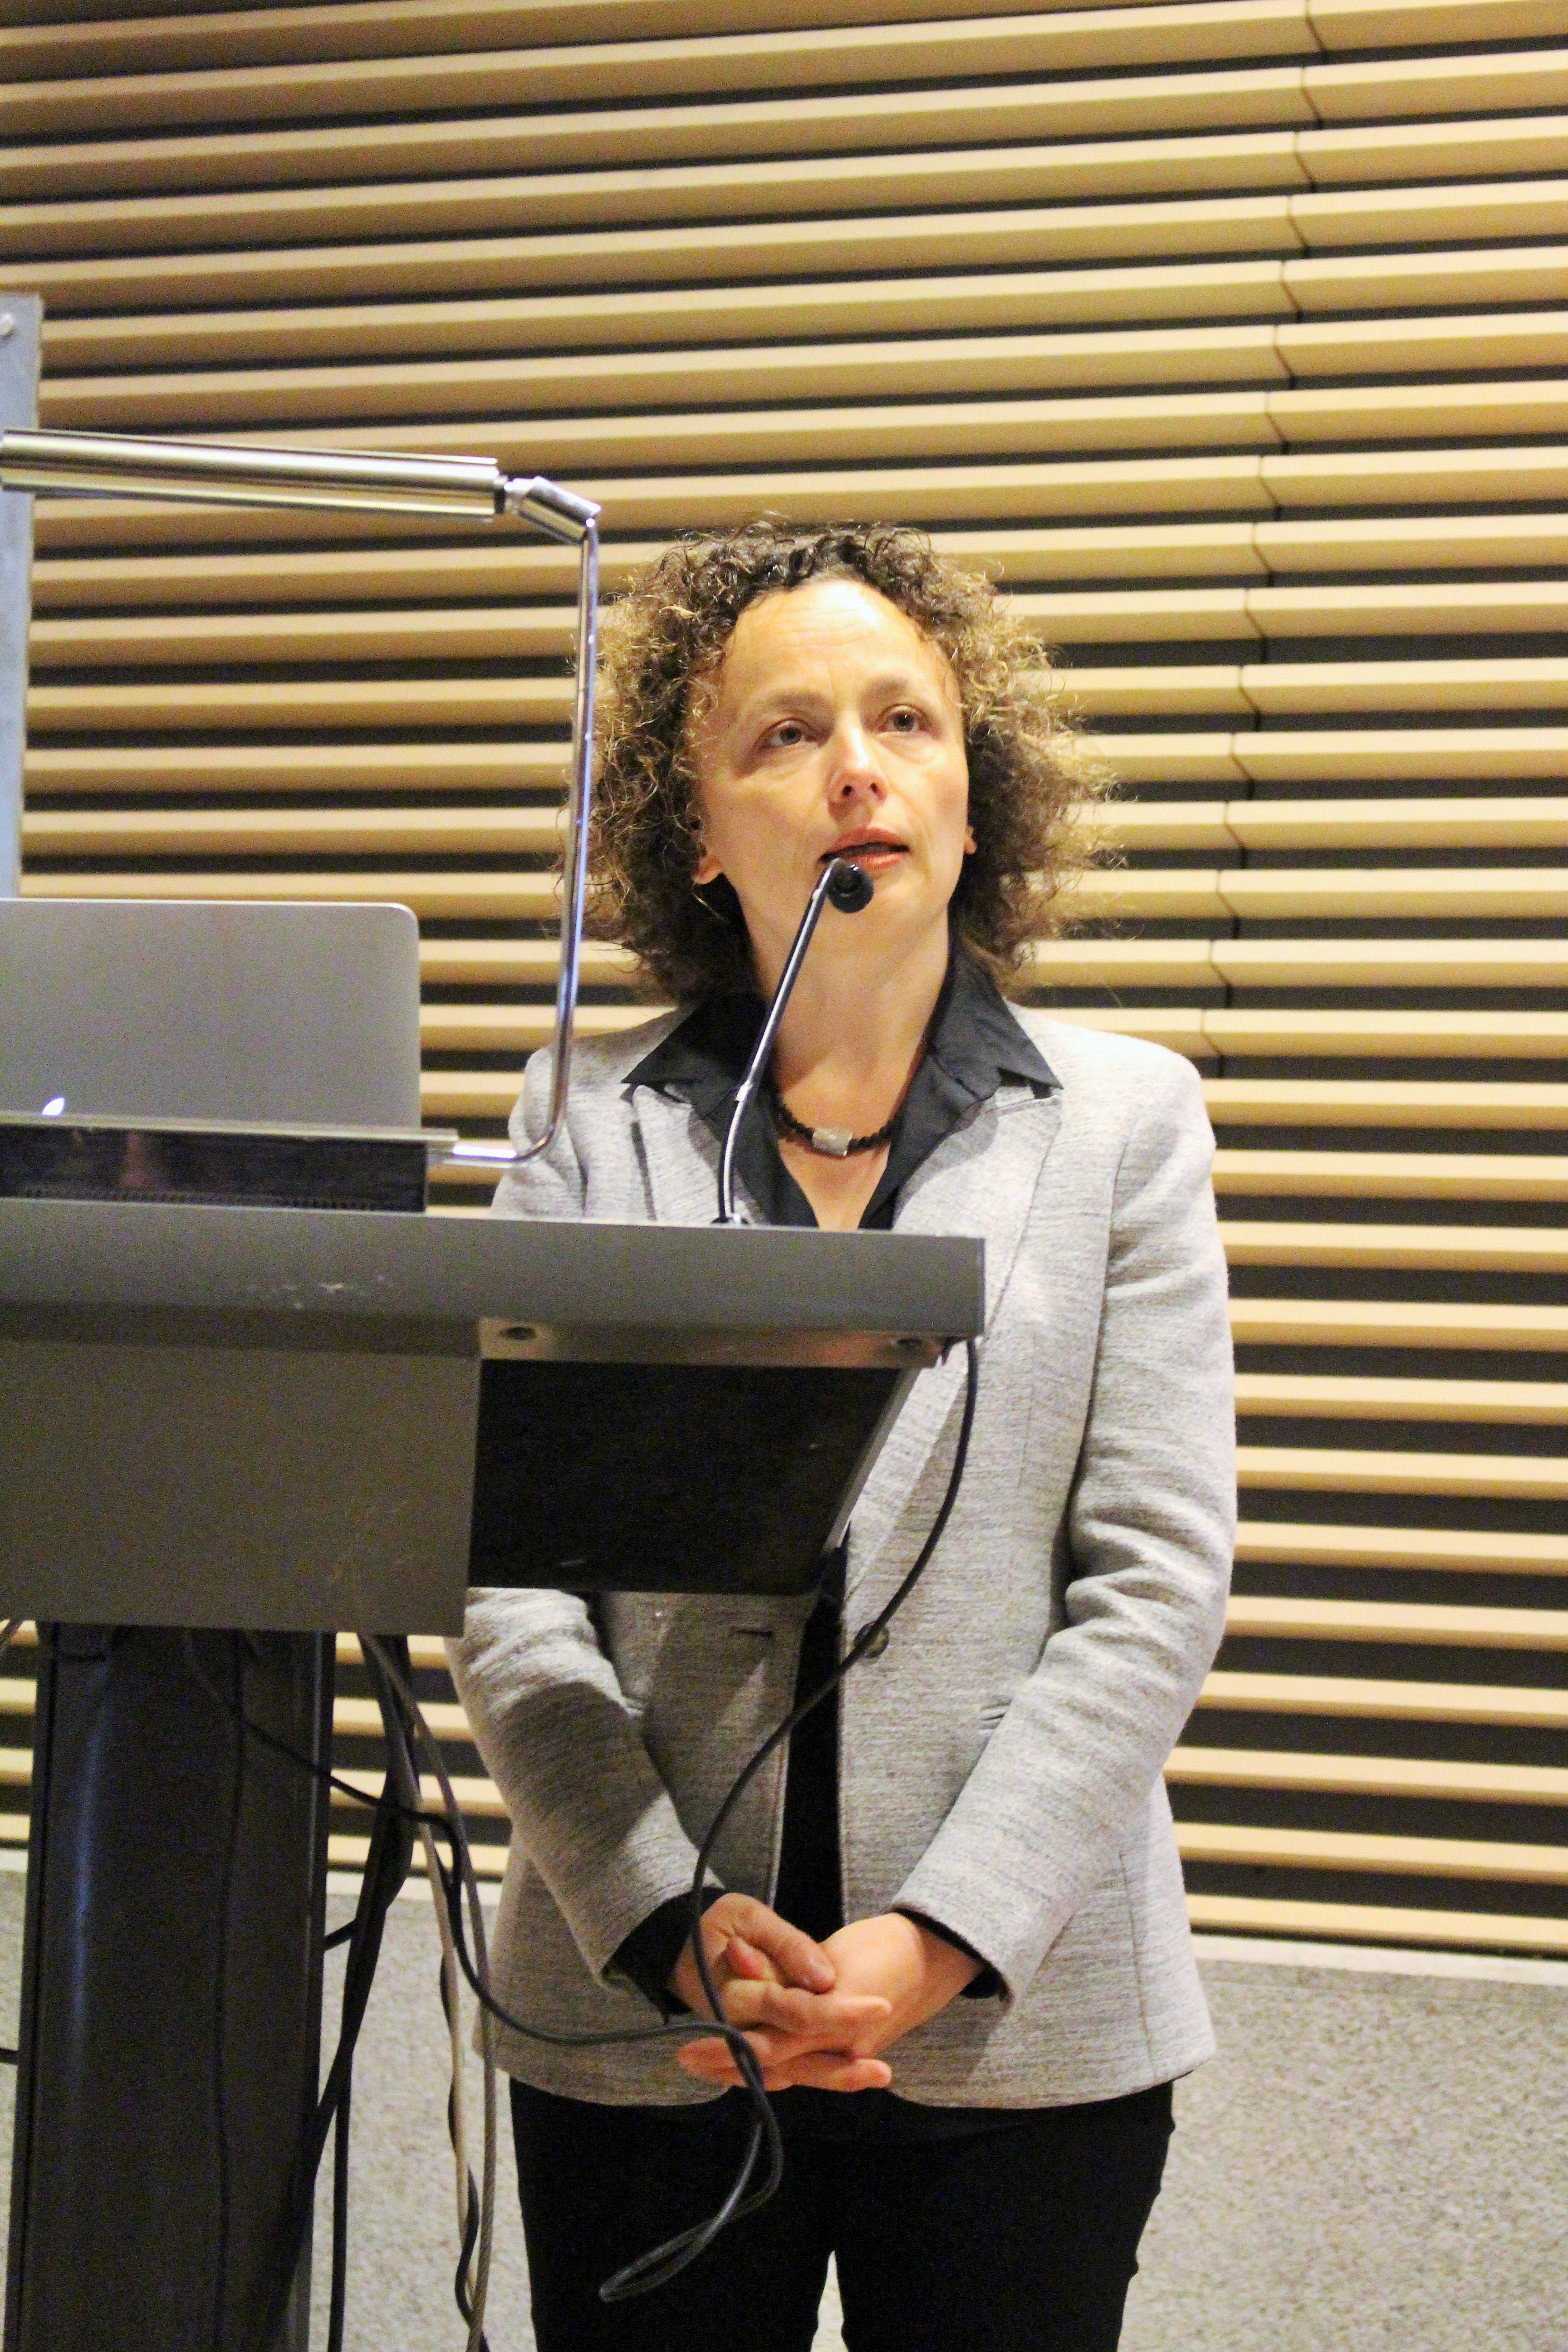 Dr. Kathrin Winkler, Leiterin der DFG Lateinamerika, begrüßt das Publikum